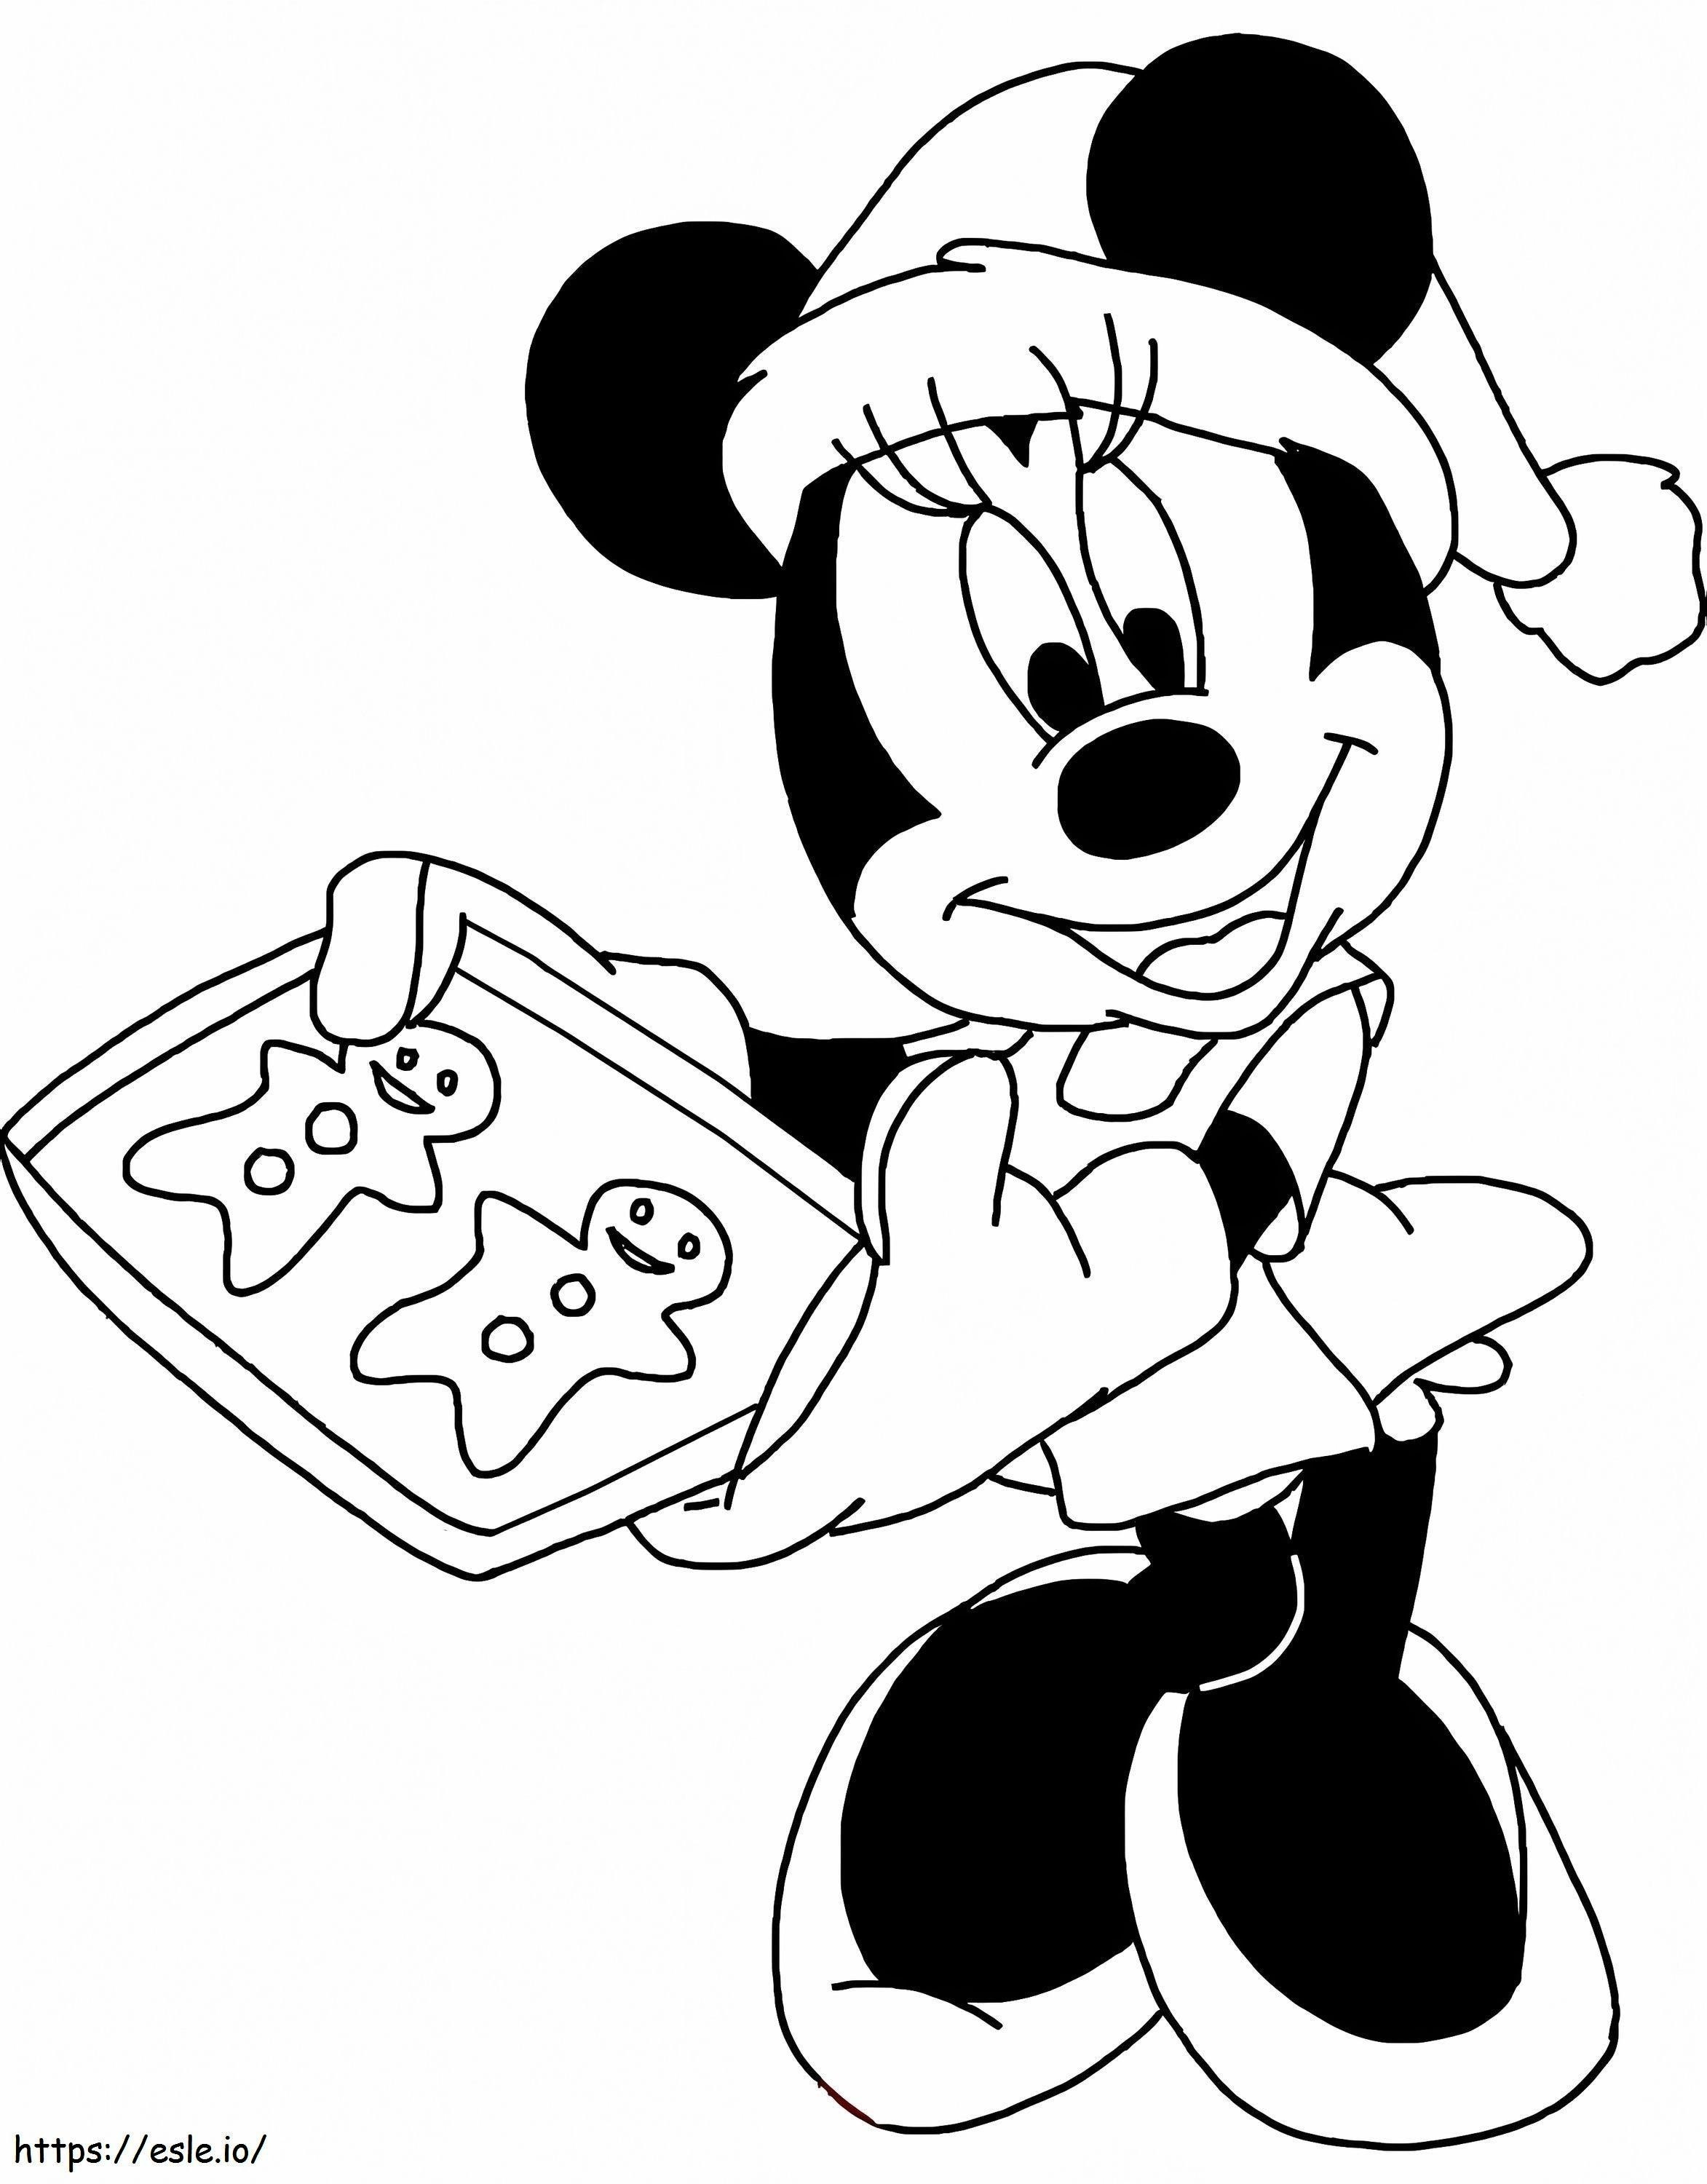 Boże Narodzenie z Myszką Minnie i Disneyem kolorowanka